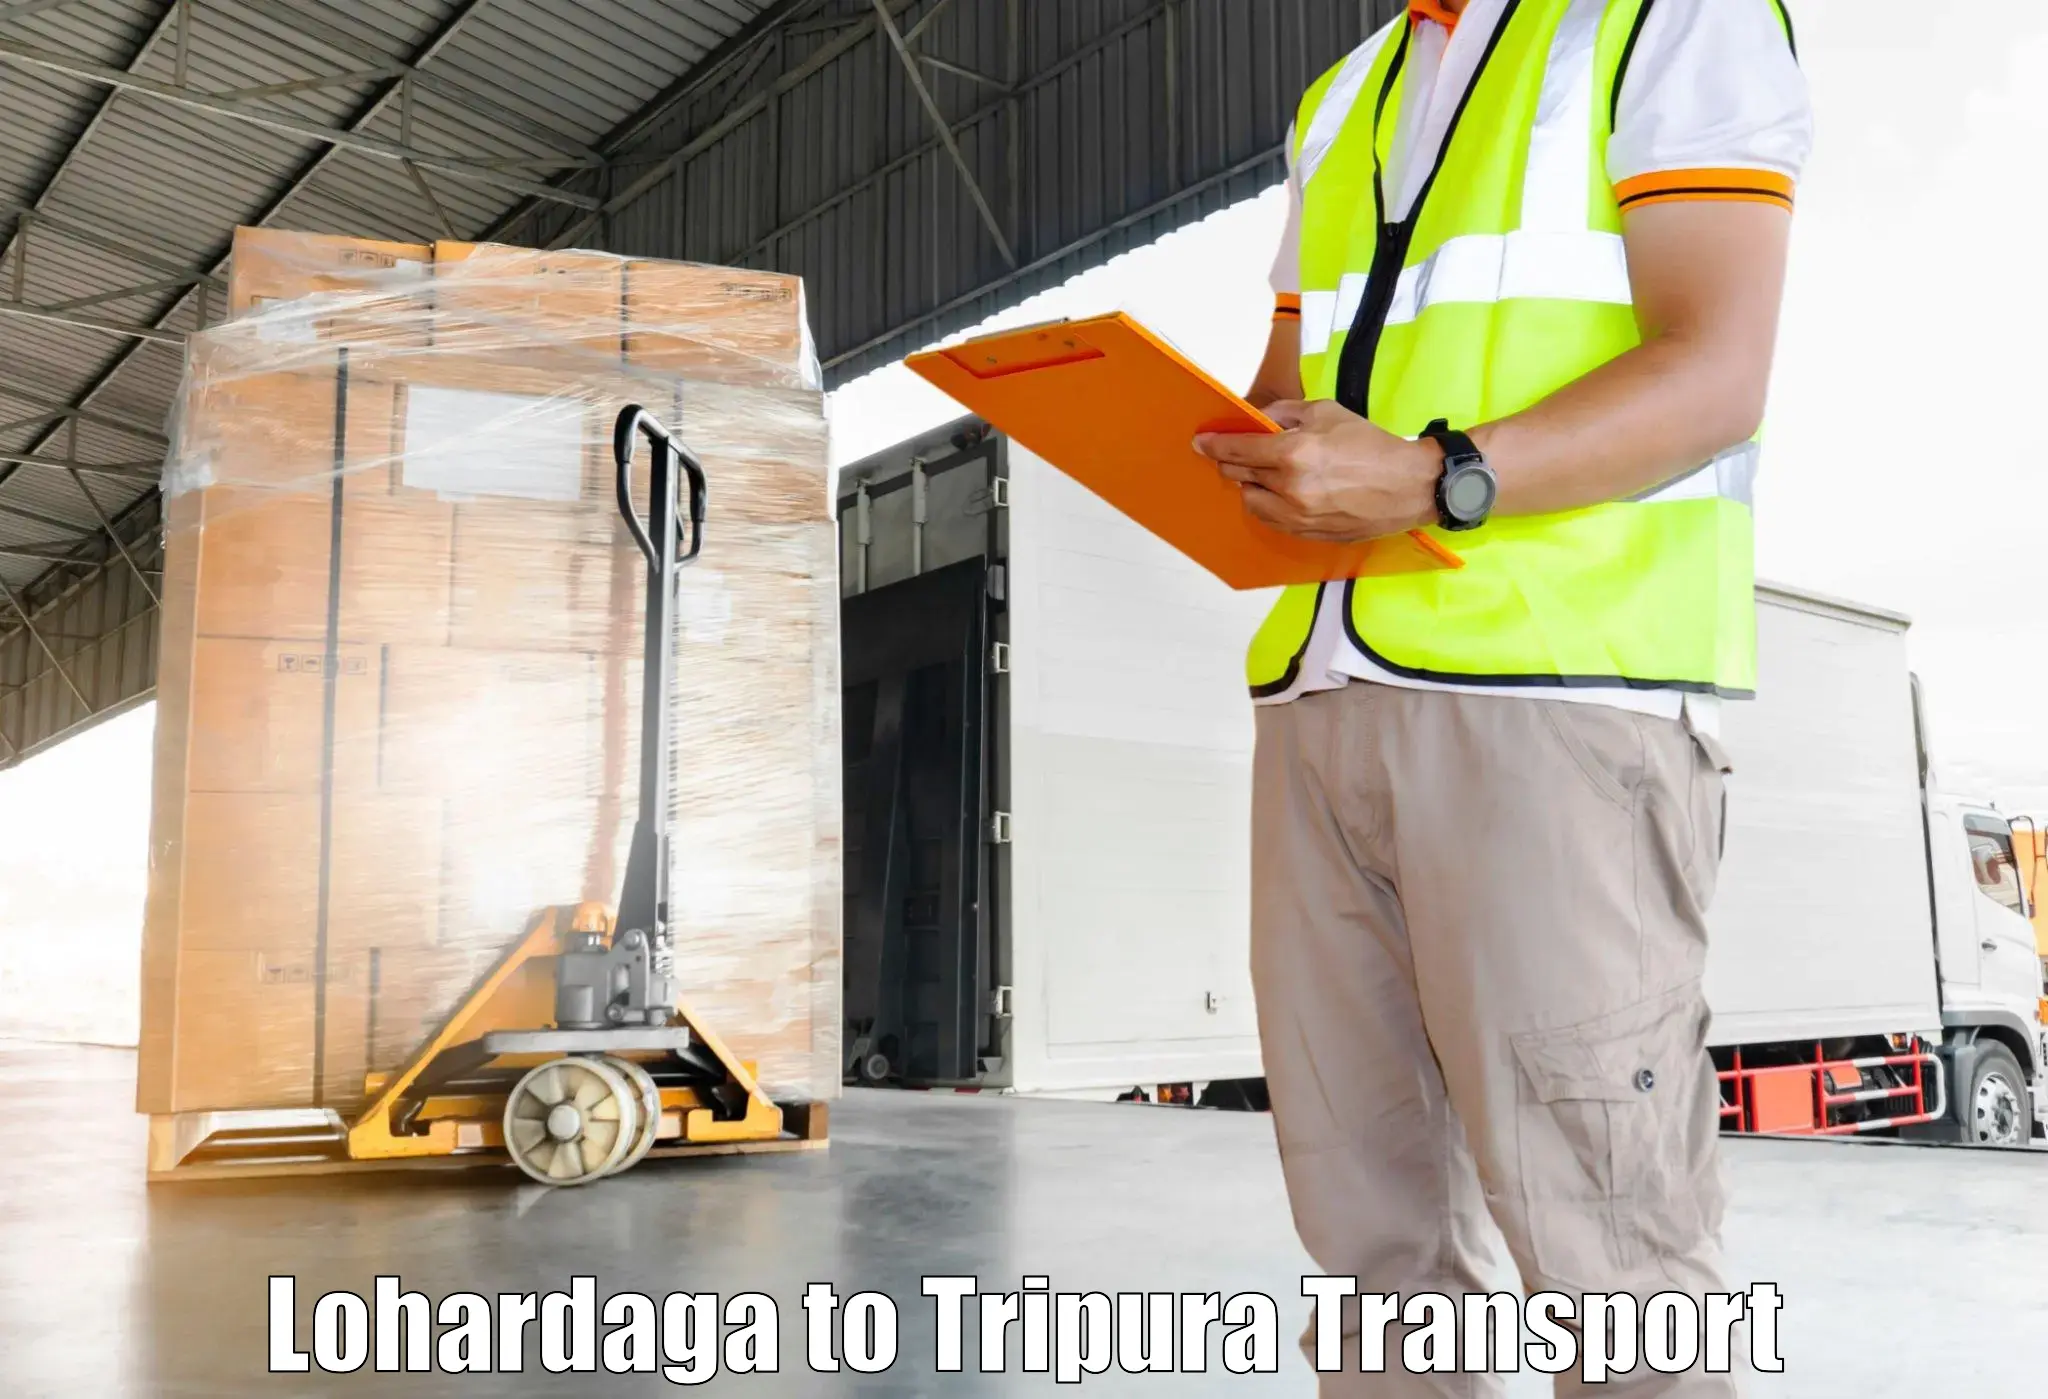 Online transport service in Lohardaga to Manughat